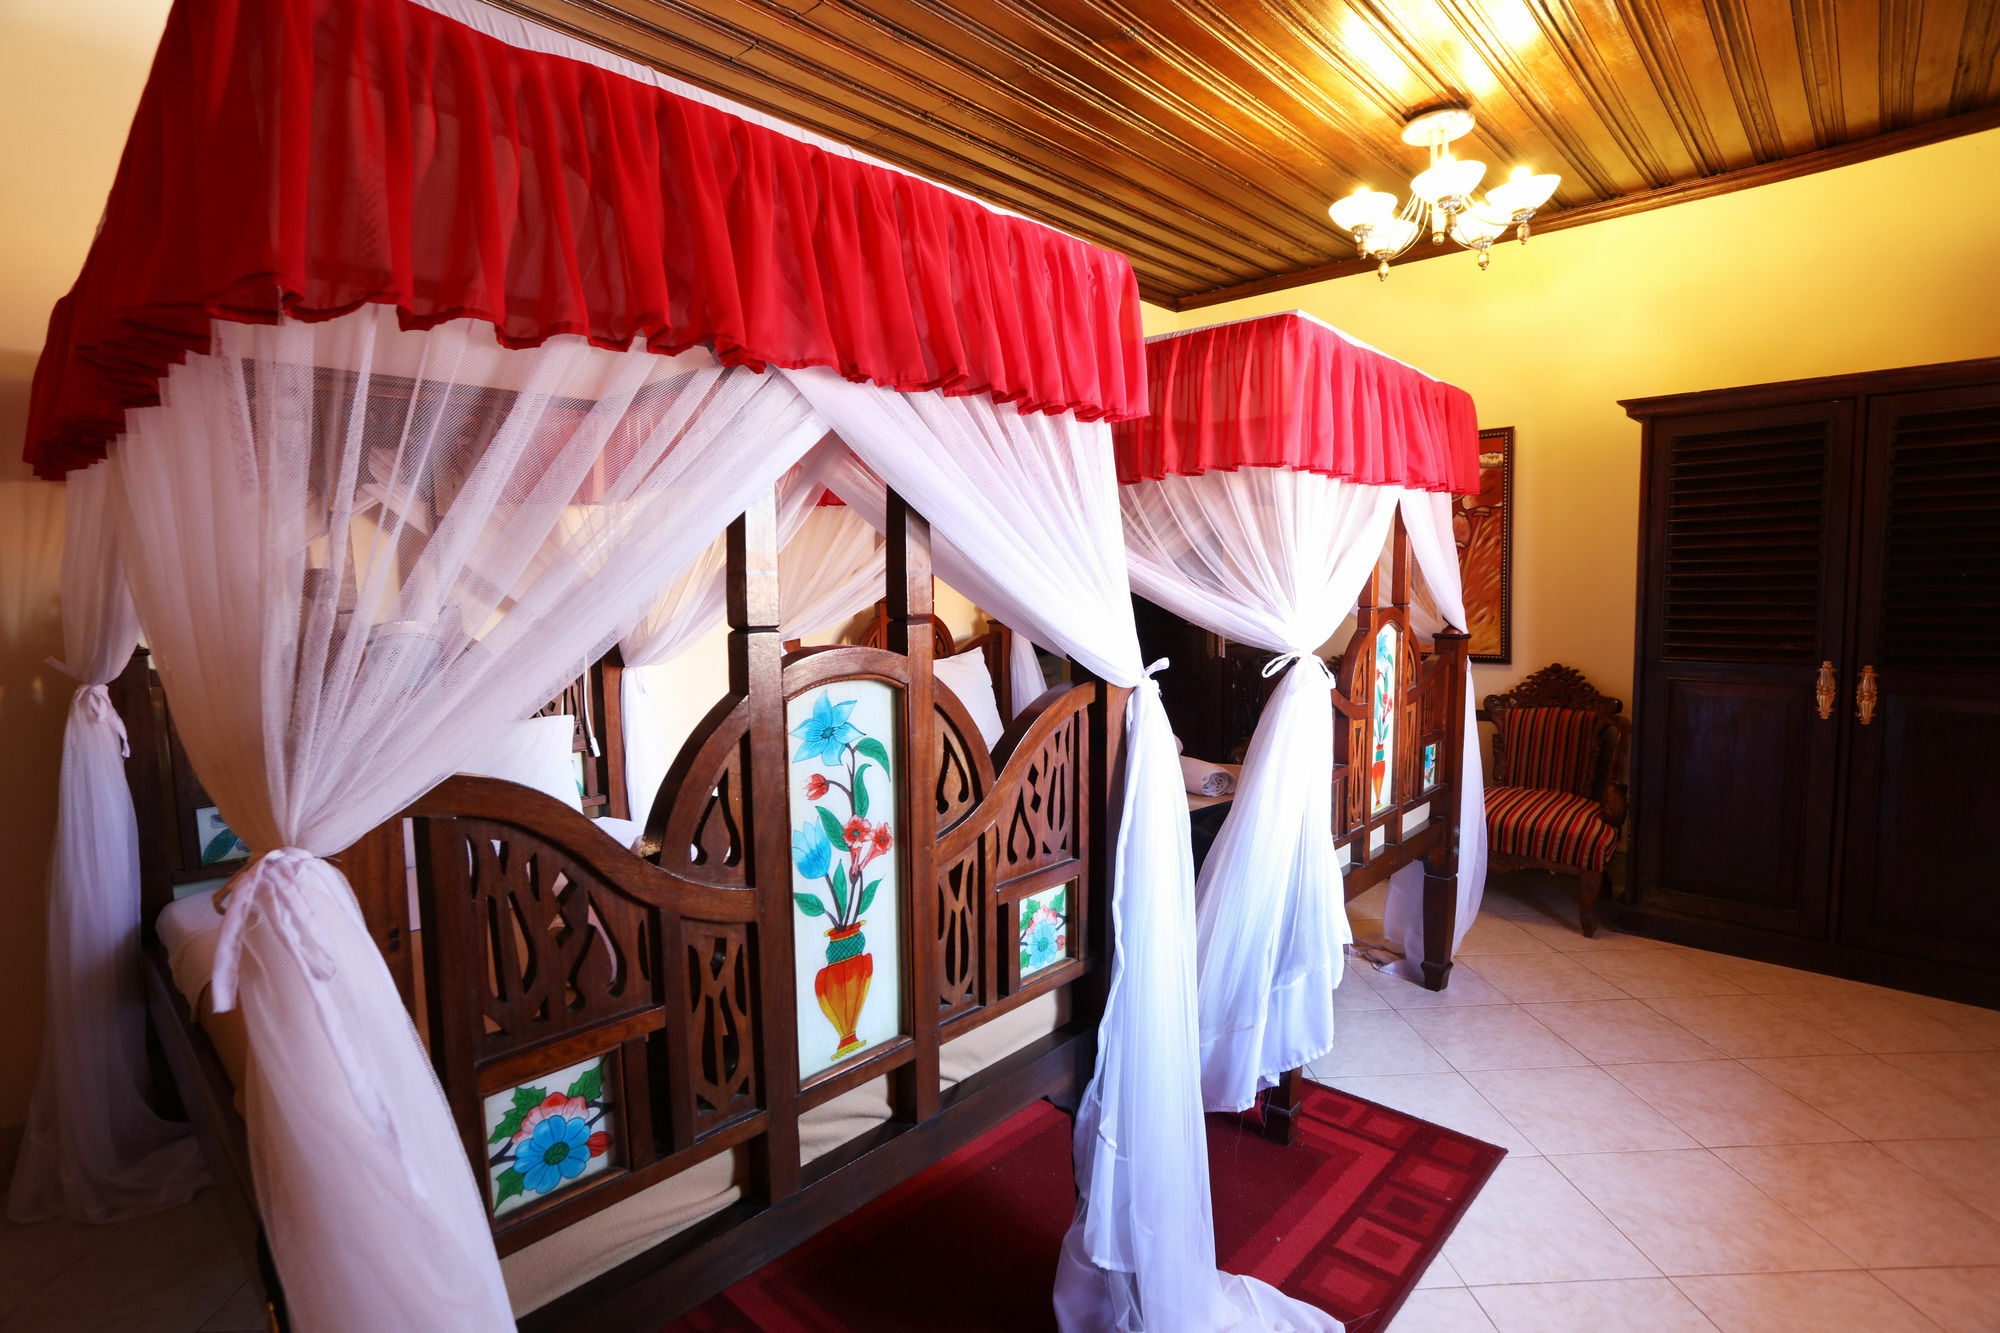 Tausi Palace Hotel Sansibar Exterior foto